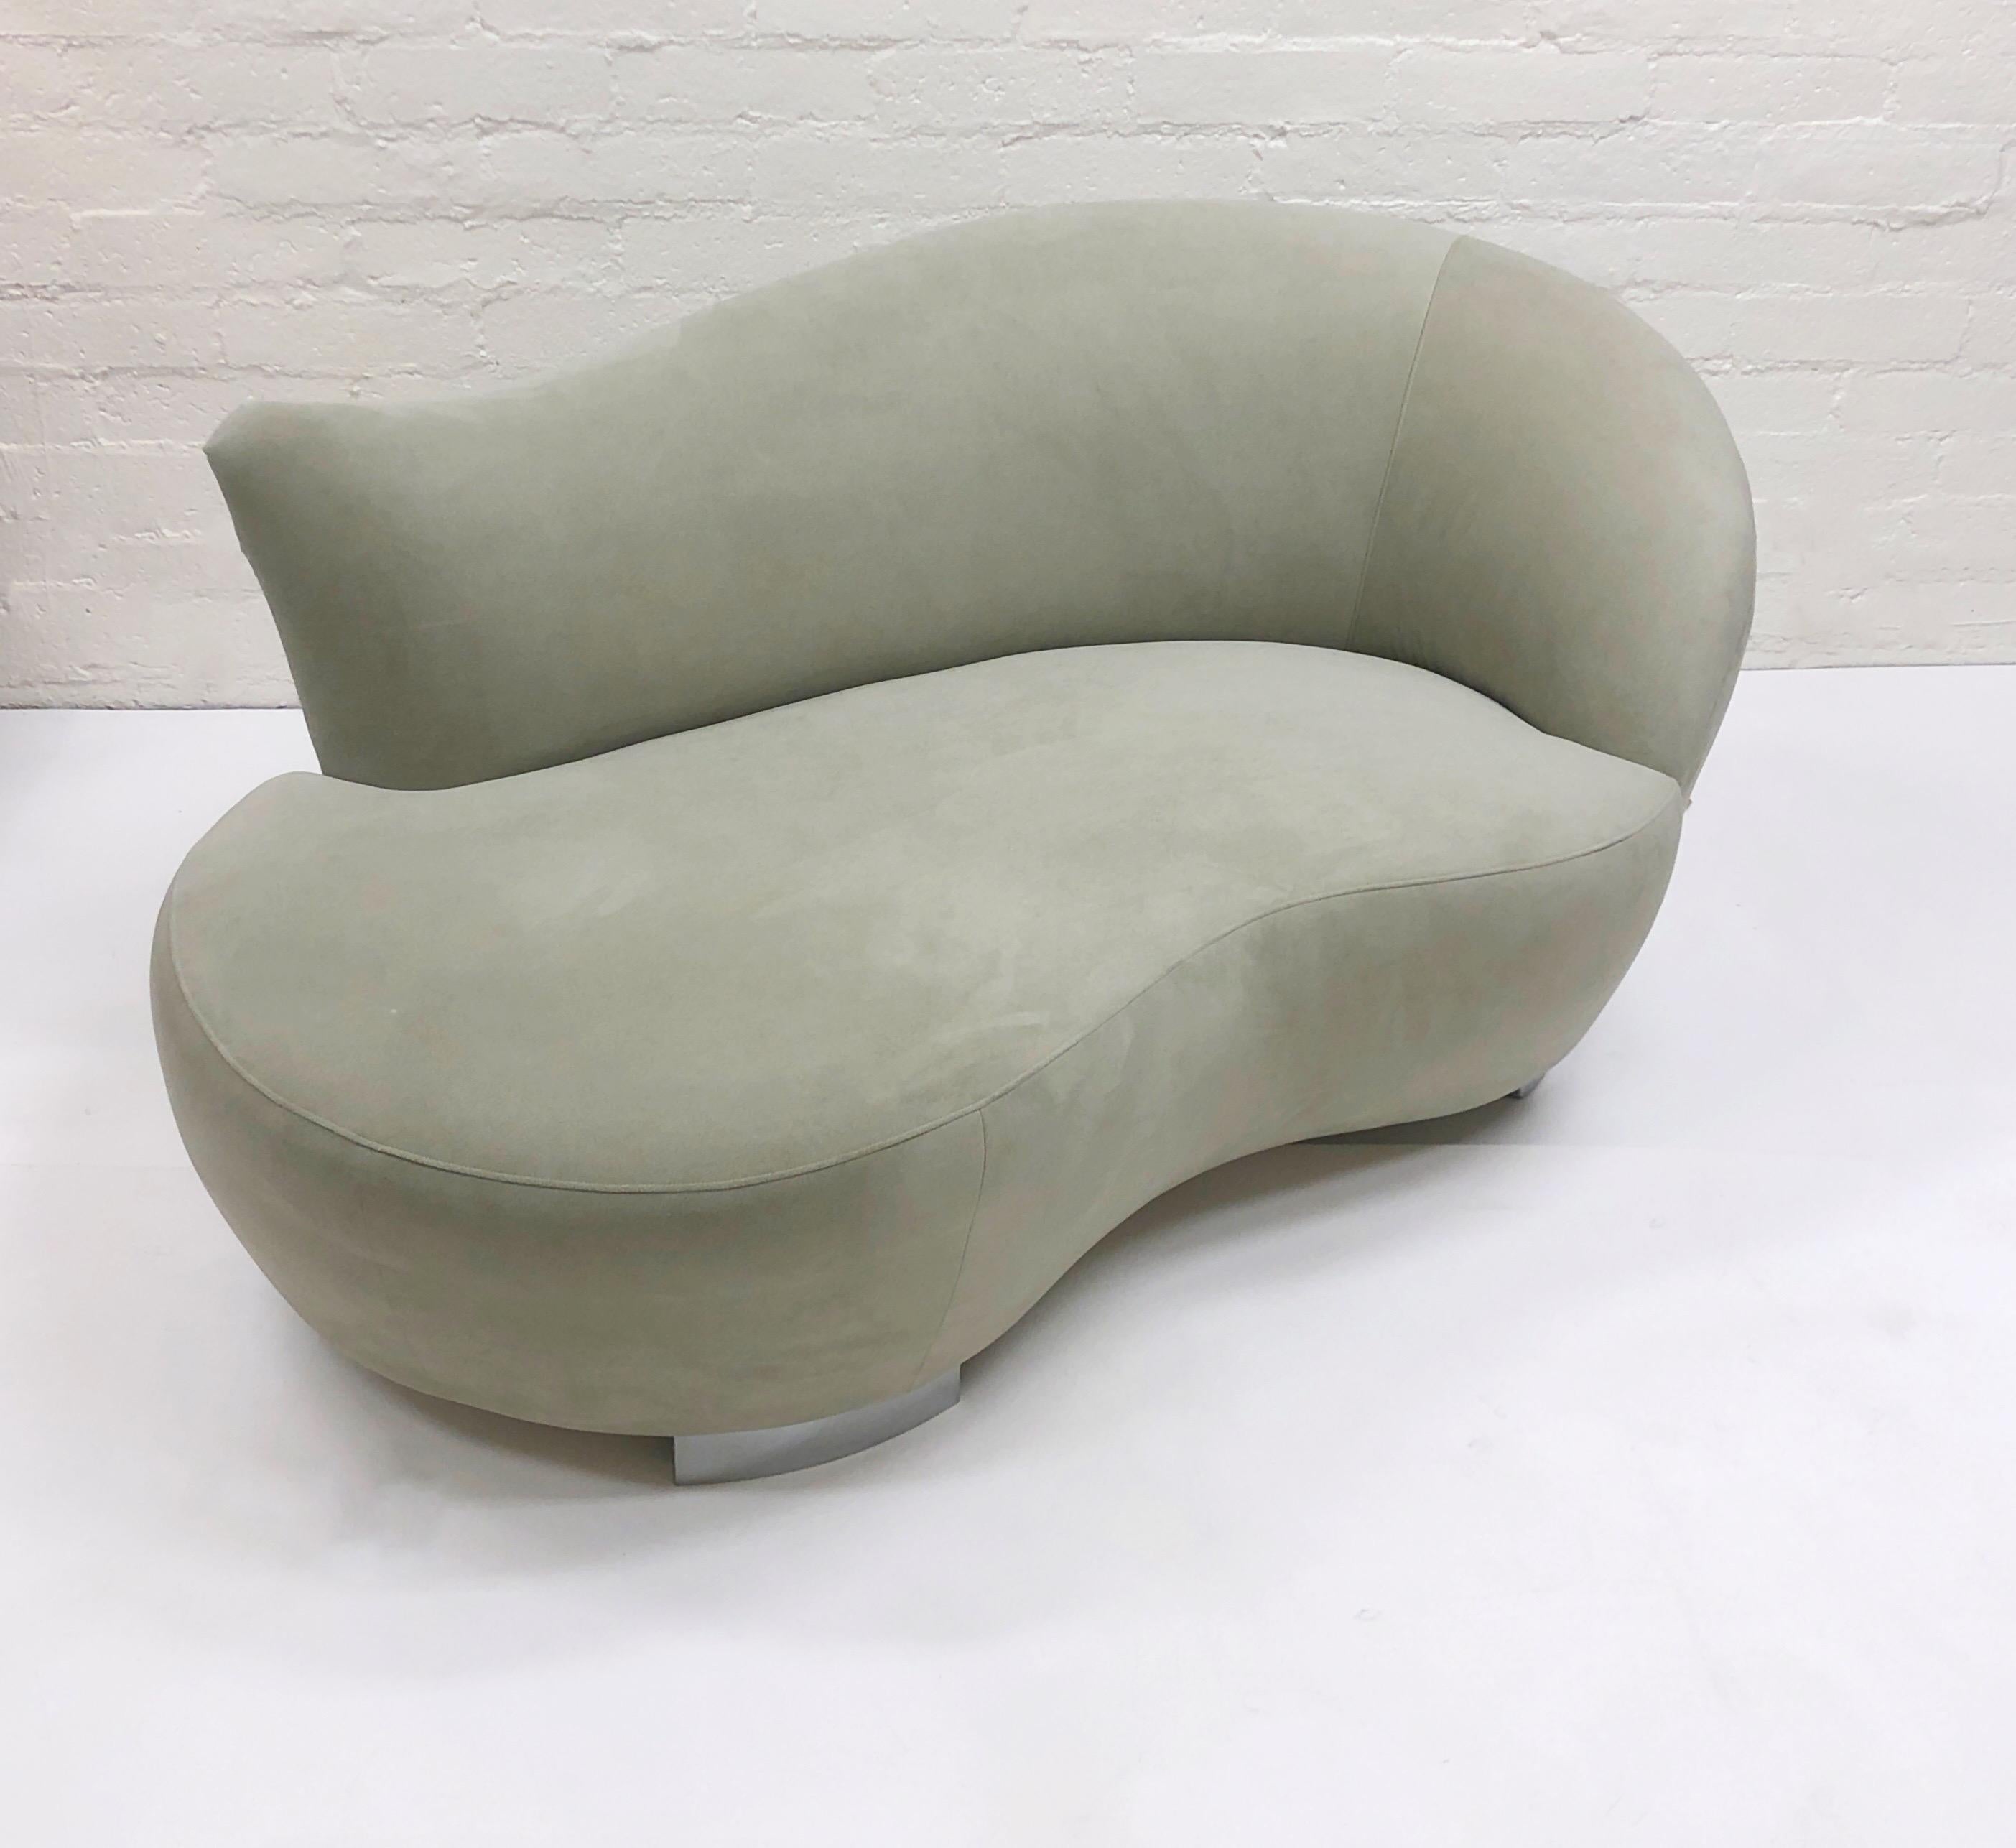 Cloud Chaise Lounge Sofa aus Ultrasuede und Chrom von Vladimir Kagan, einem bekannten amerikanischen Designer, für Weiman. 
Im Originalzustand, mit geringen altersbedingten Gebrauchsspuren. 
Abmessungen: 64